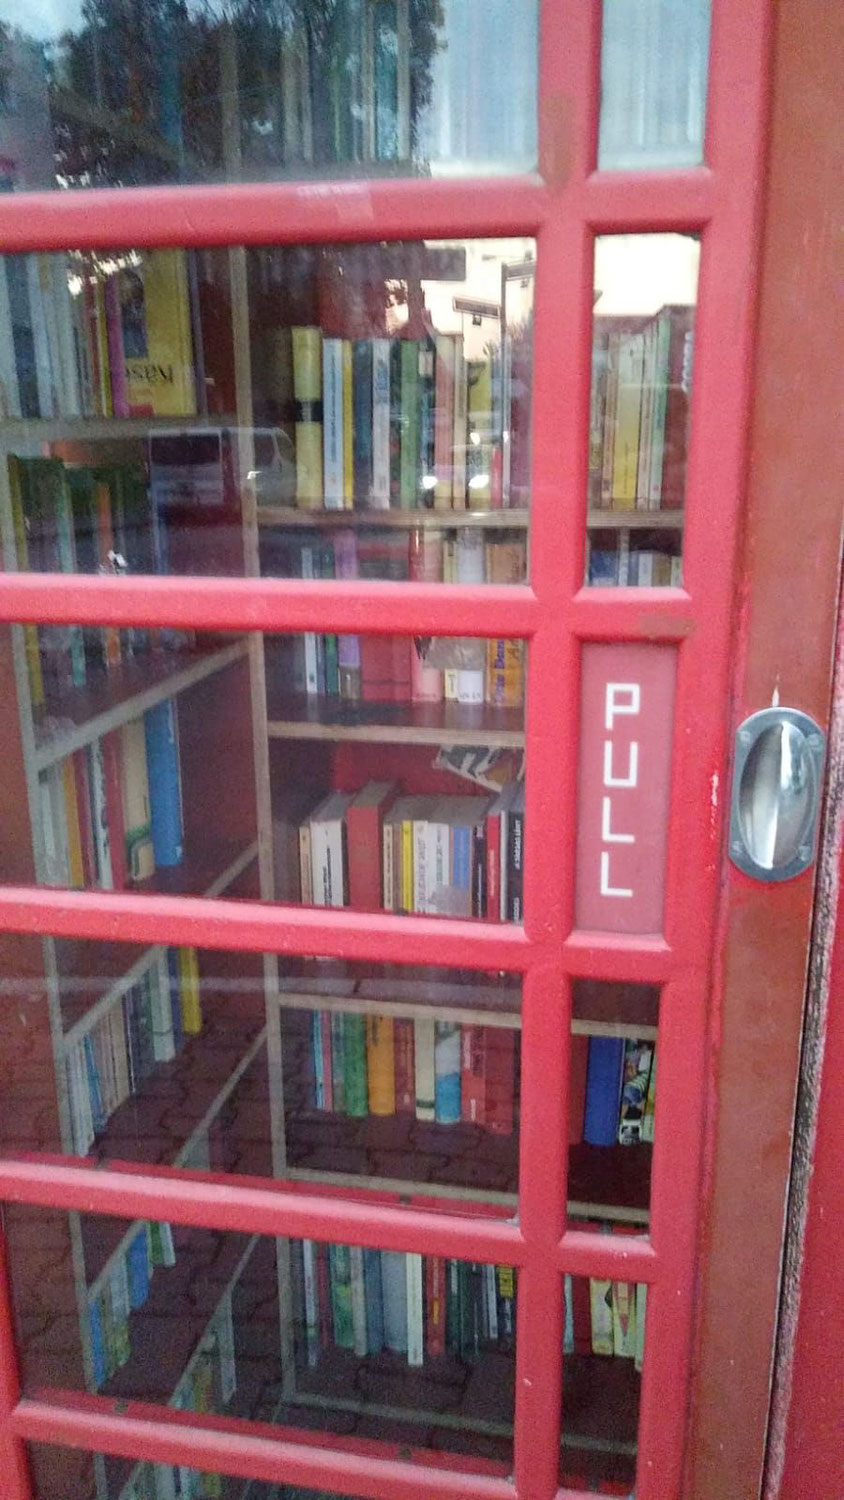 Offene Bücherschränke in Niederursel und Heddernheim